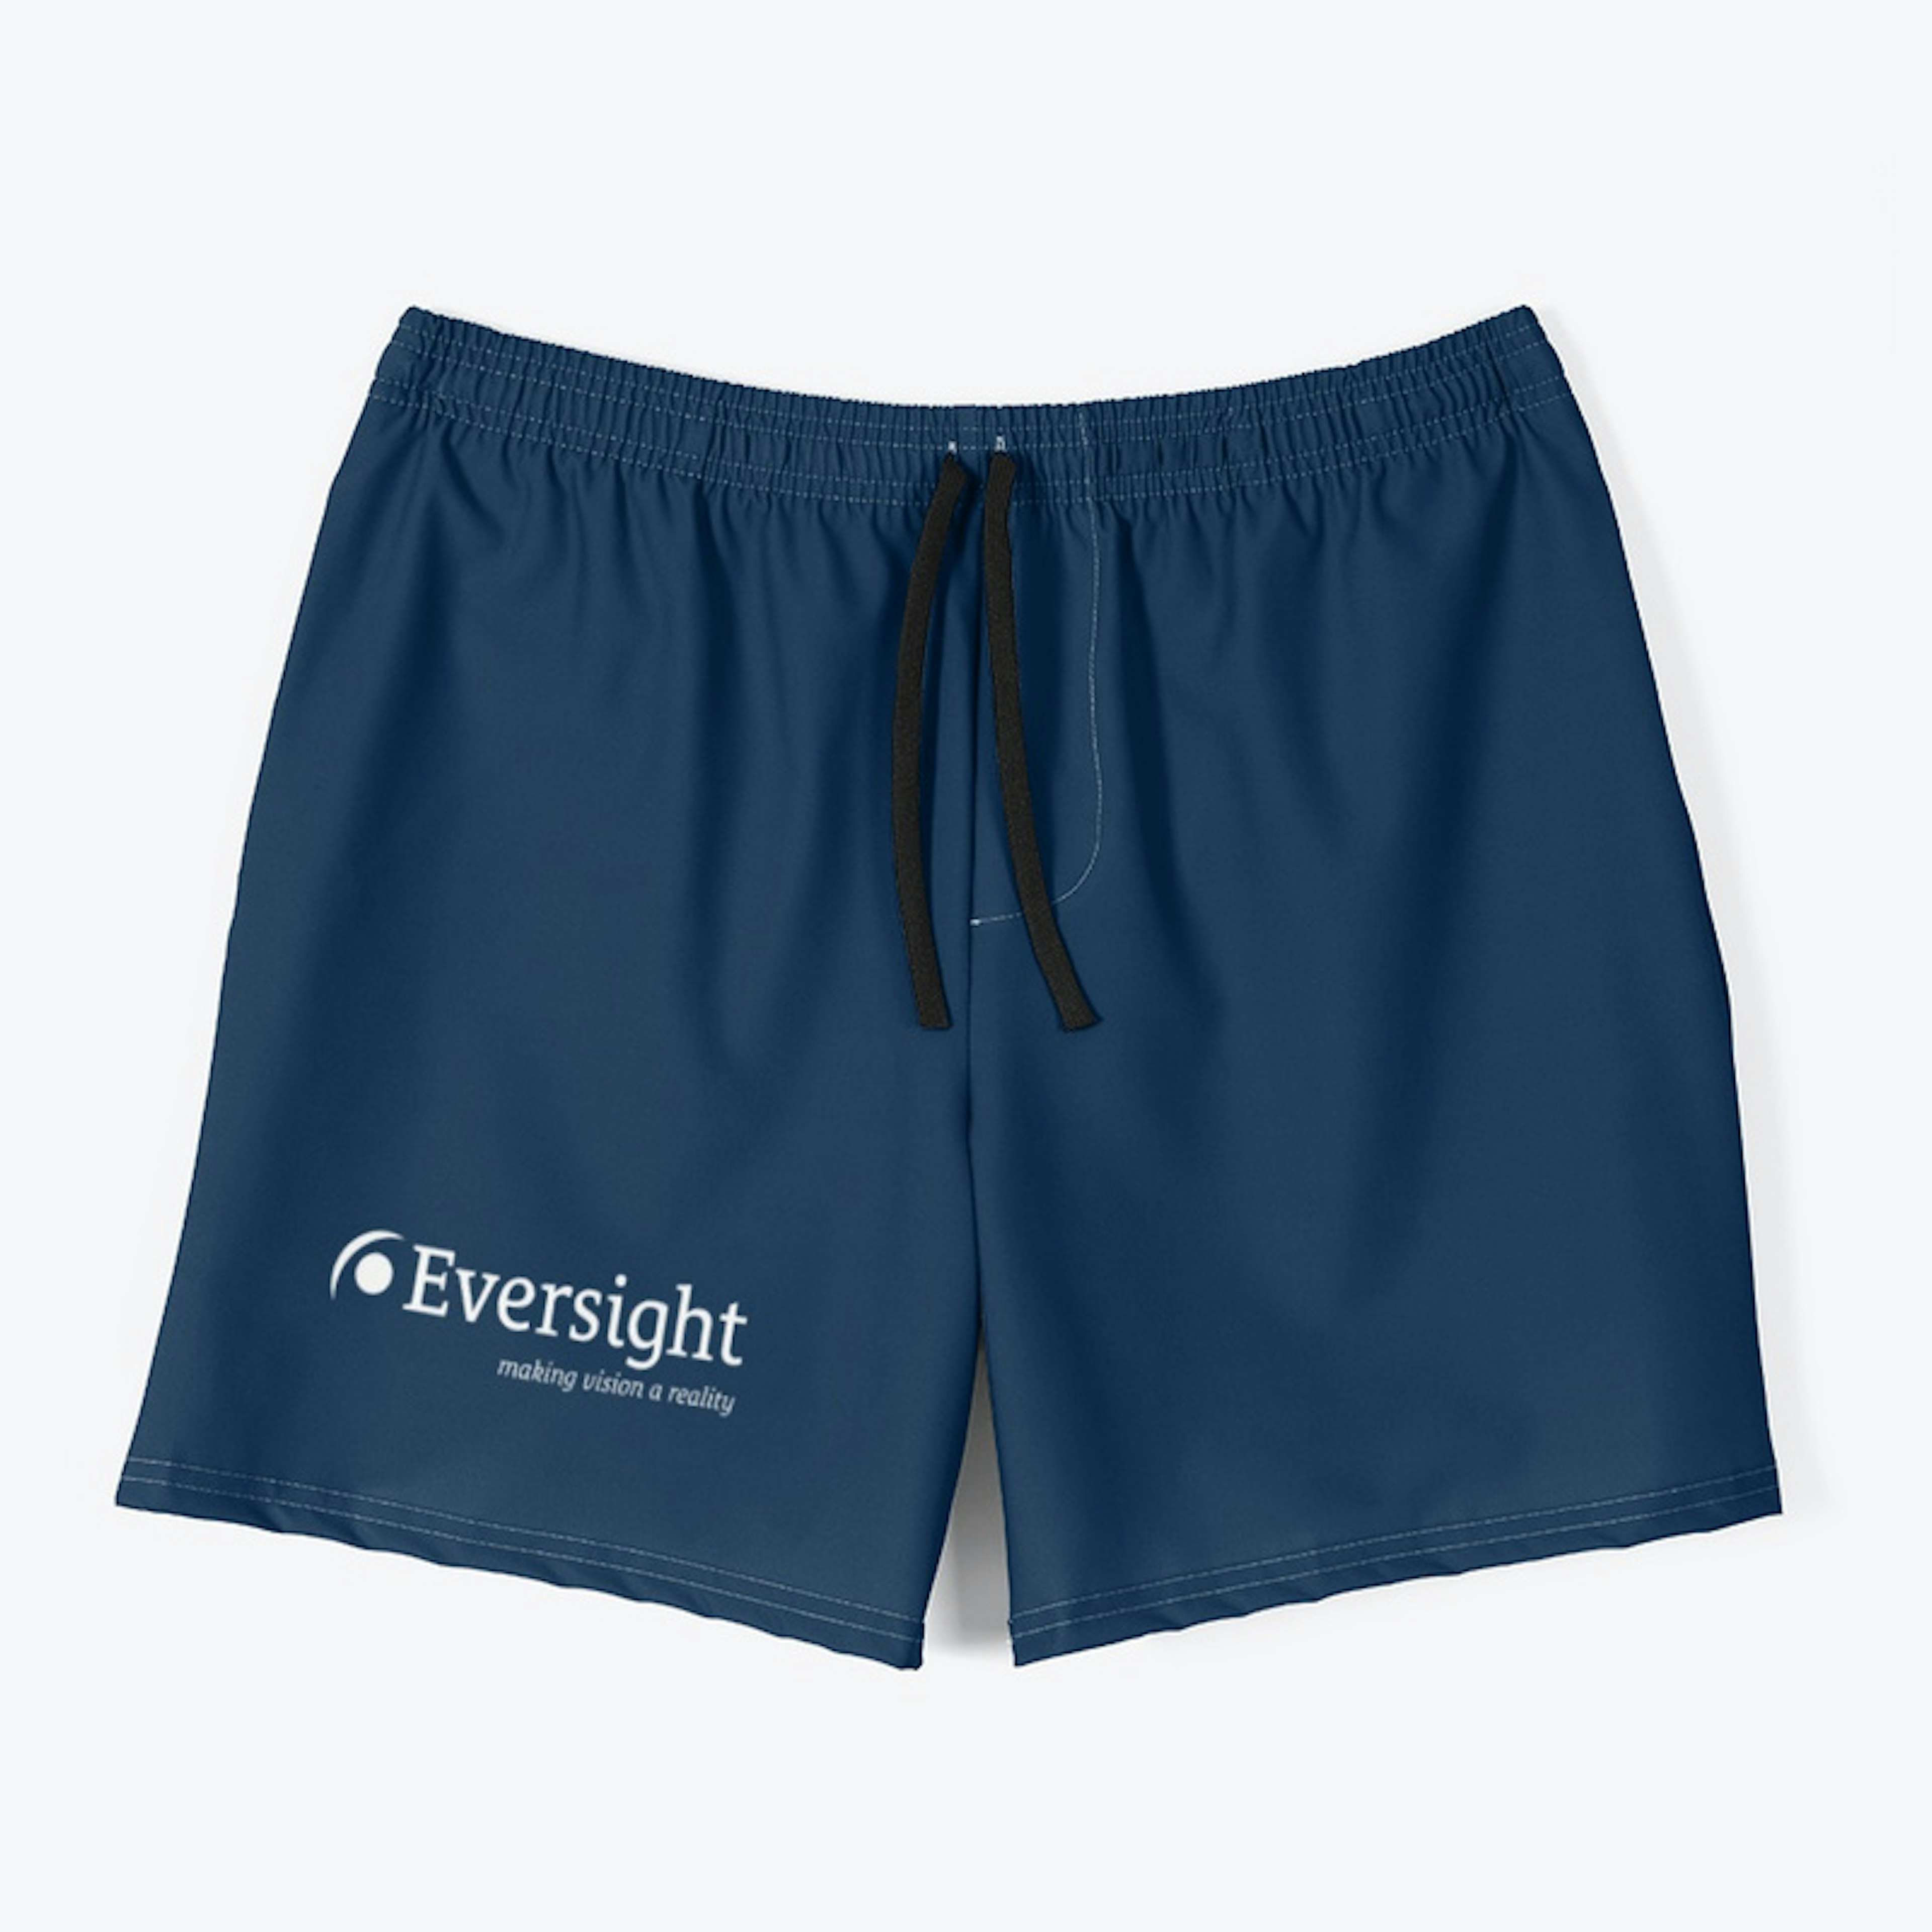 Eversight Men's Swim Trunks - Navy